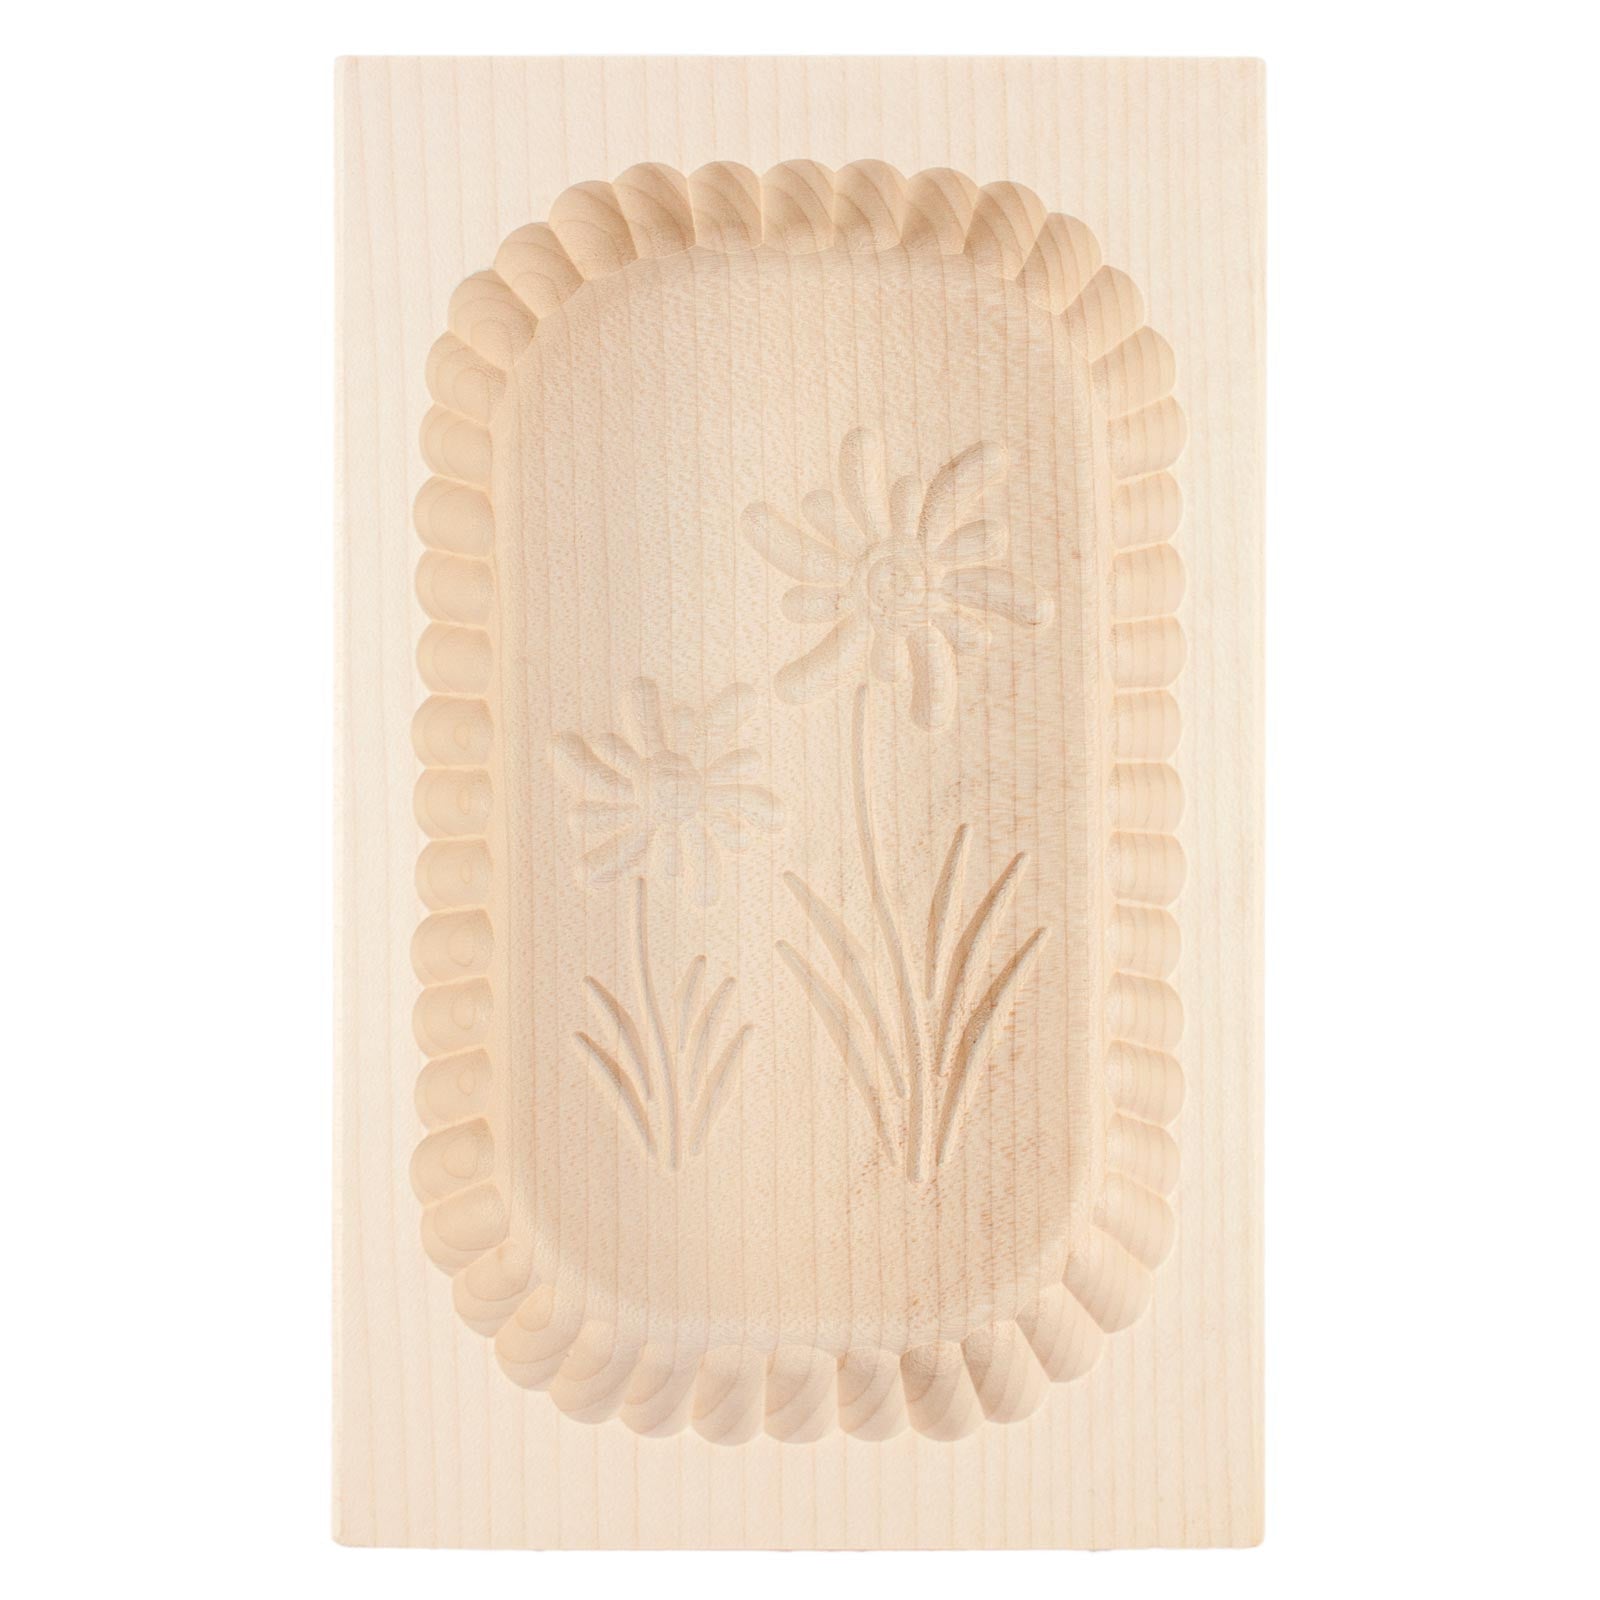 Salewsky Jurgen Hard Carved Wooden Round Butter Mold Assorted Patterns Medium 8 oz, Size: 3.88 x 7.5